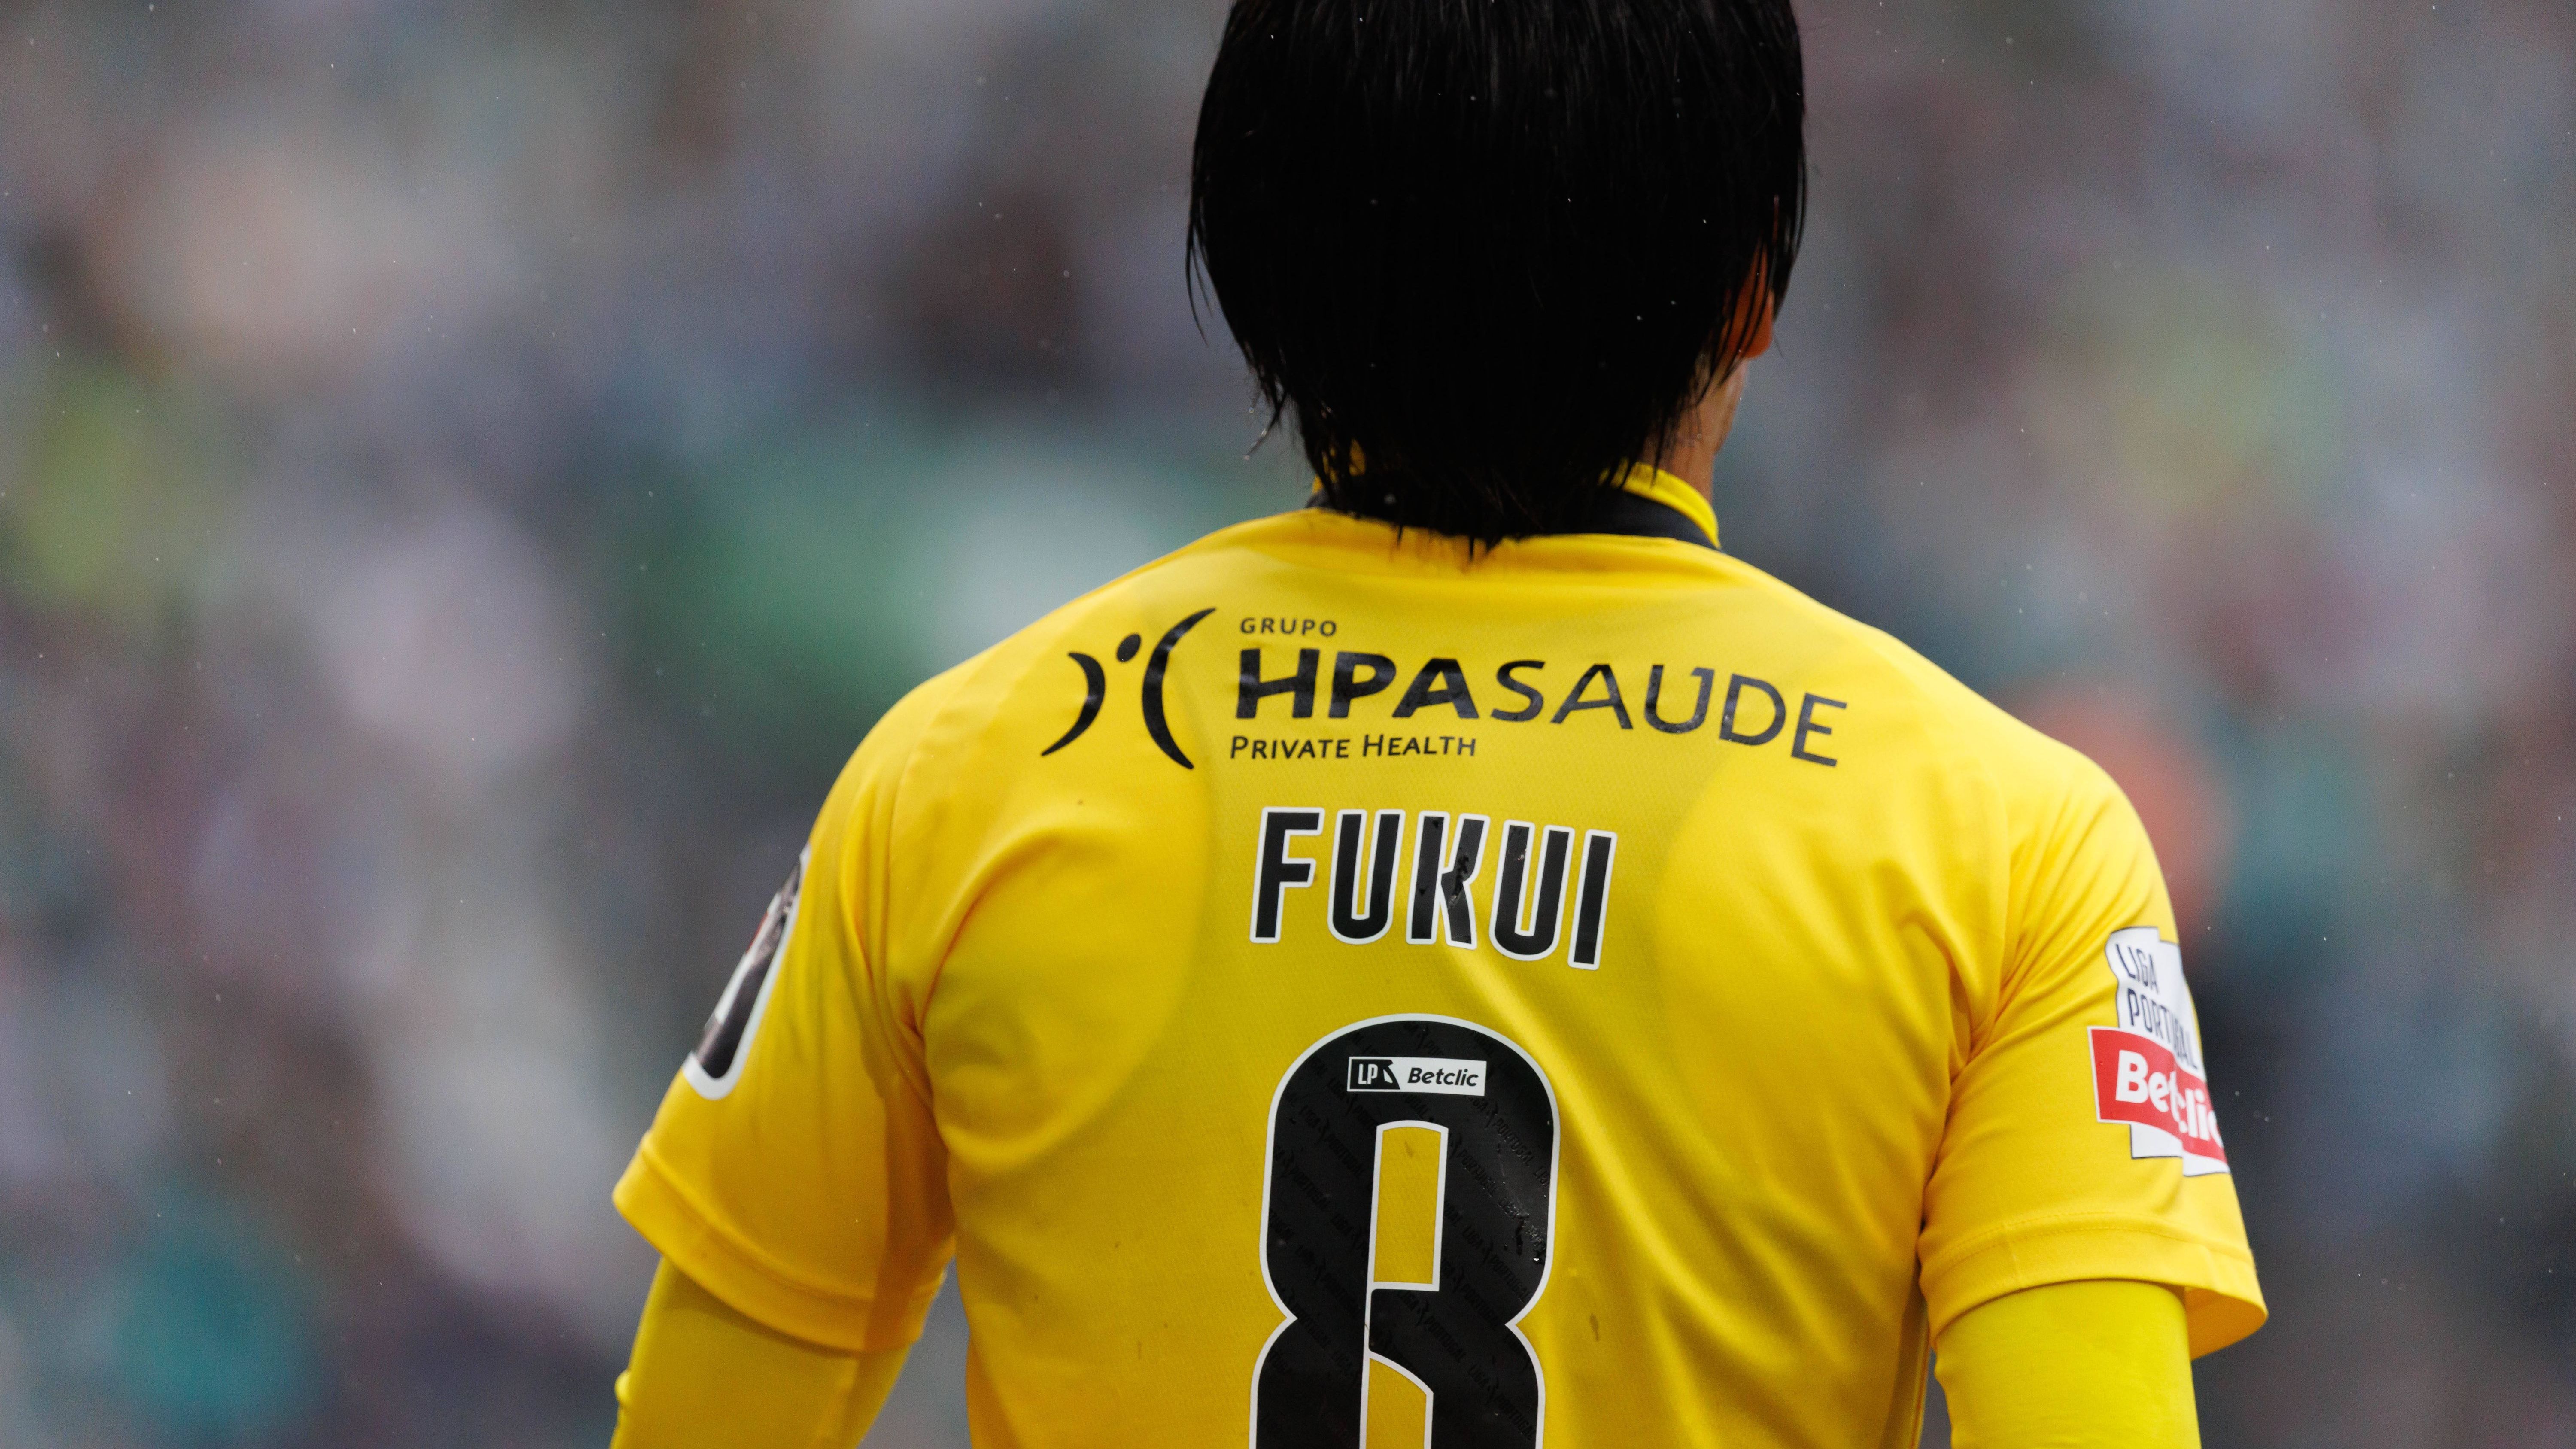 <strong>Taichi Fukui ist bis Sommer in Portugal</strong><br>Im Januar verlängerte der FC Bayern Fukuis Vertrag bis 2026, danach wurde er nach Portugal zu Erstligist Portimonense SC ausgeliehen, das Leihgeschäft läuft bis Sommer.